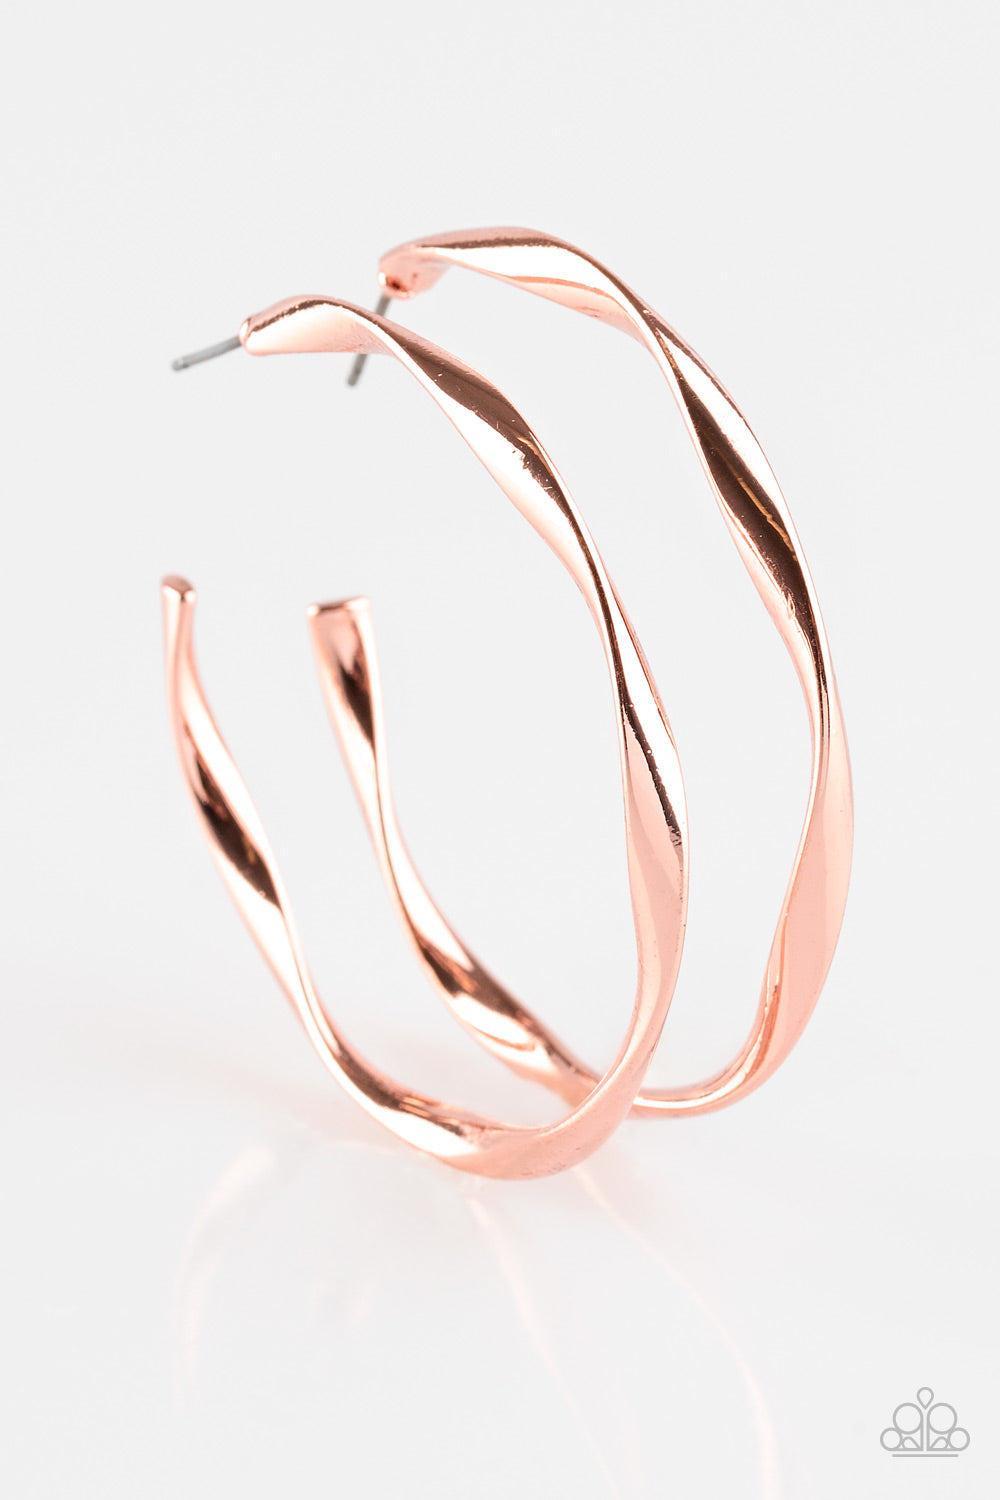 Plot Twist - Copper Earrings